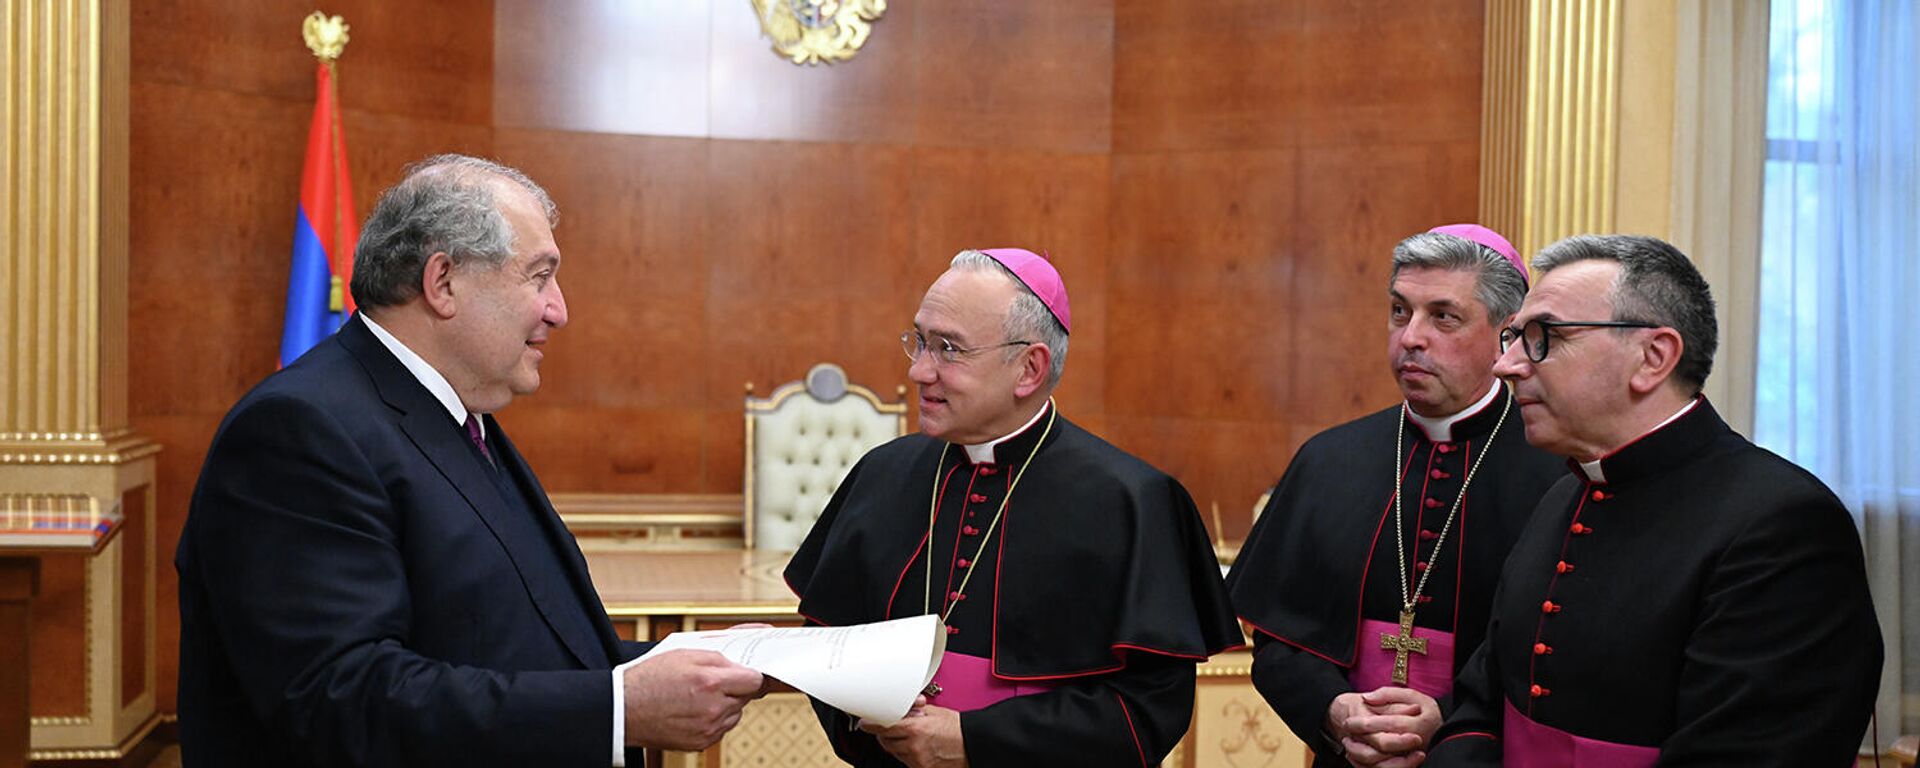 Его Святейшество Папа Франциск наградил президента Армена Саркисяна высшим орденом Святого Престола (29 октября 2021). Ватикан - Sputnik Армения, 1920, 29.10.2021